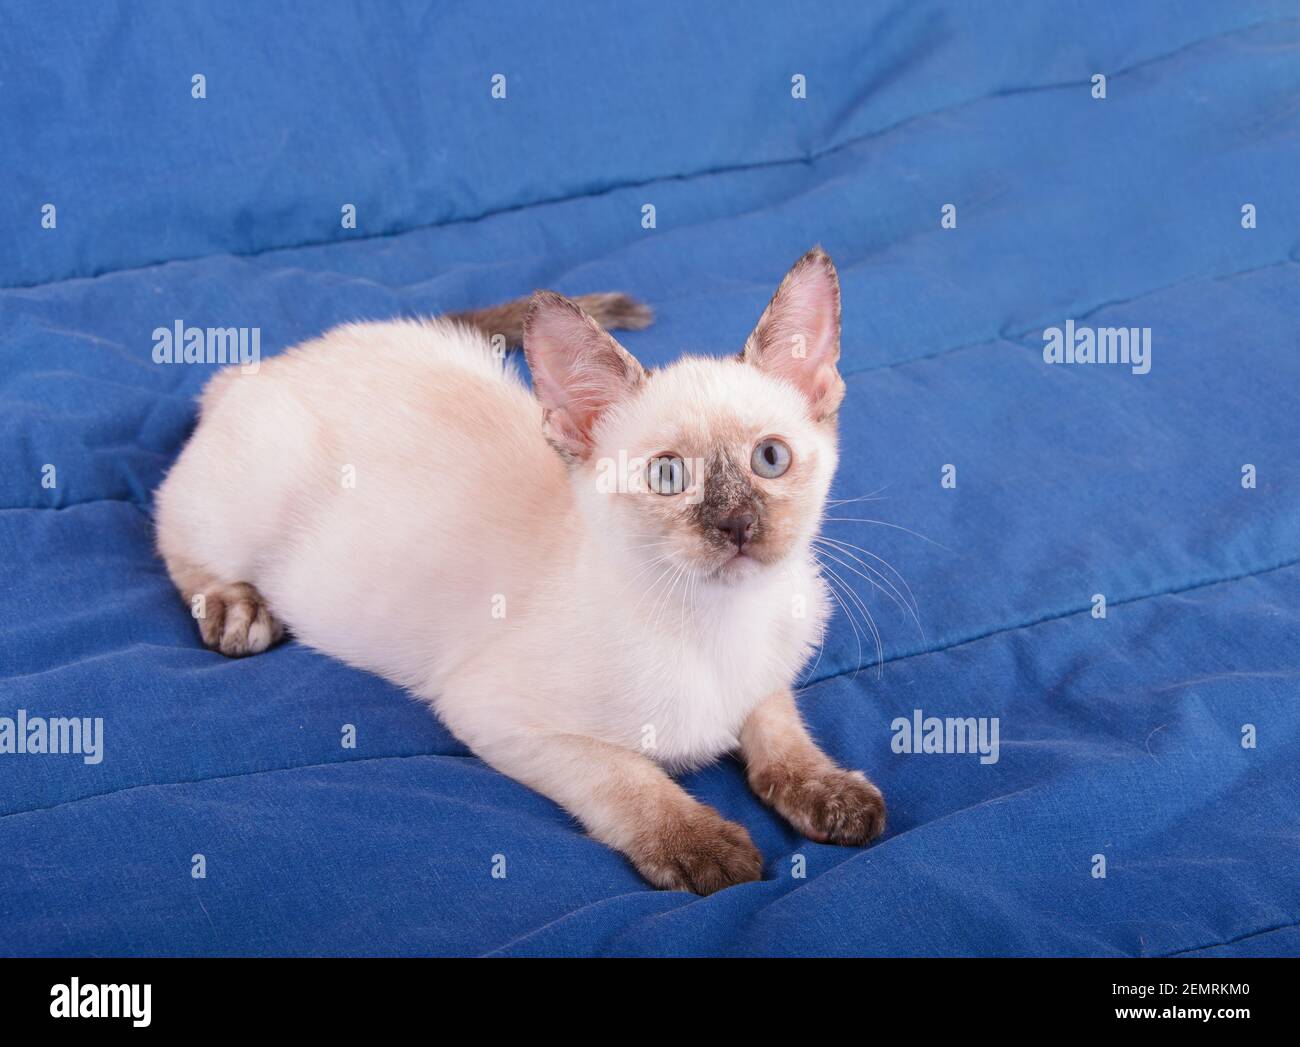 Beau jeune chat siamois point de torsion reposant sur une couverture bleue, regardant vers le haut Banque D'Images